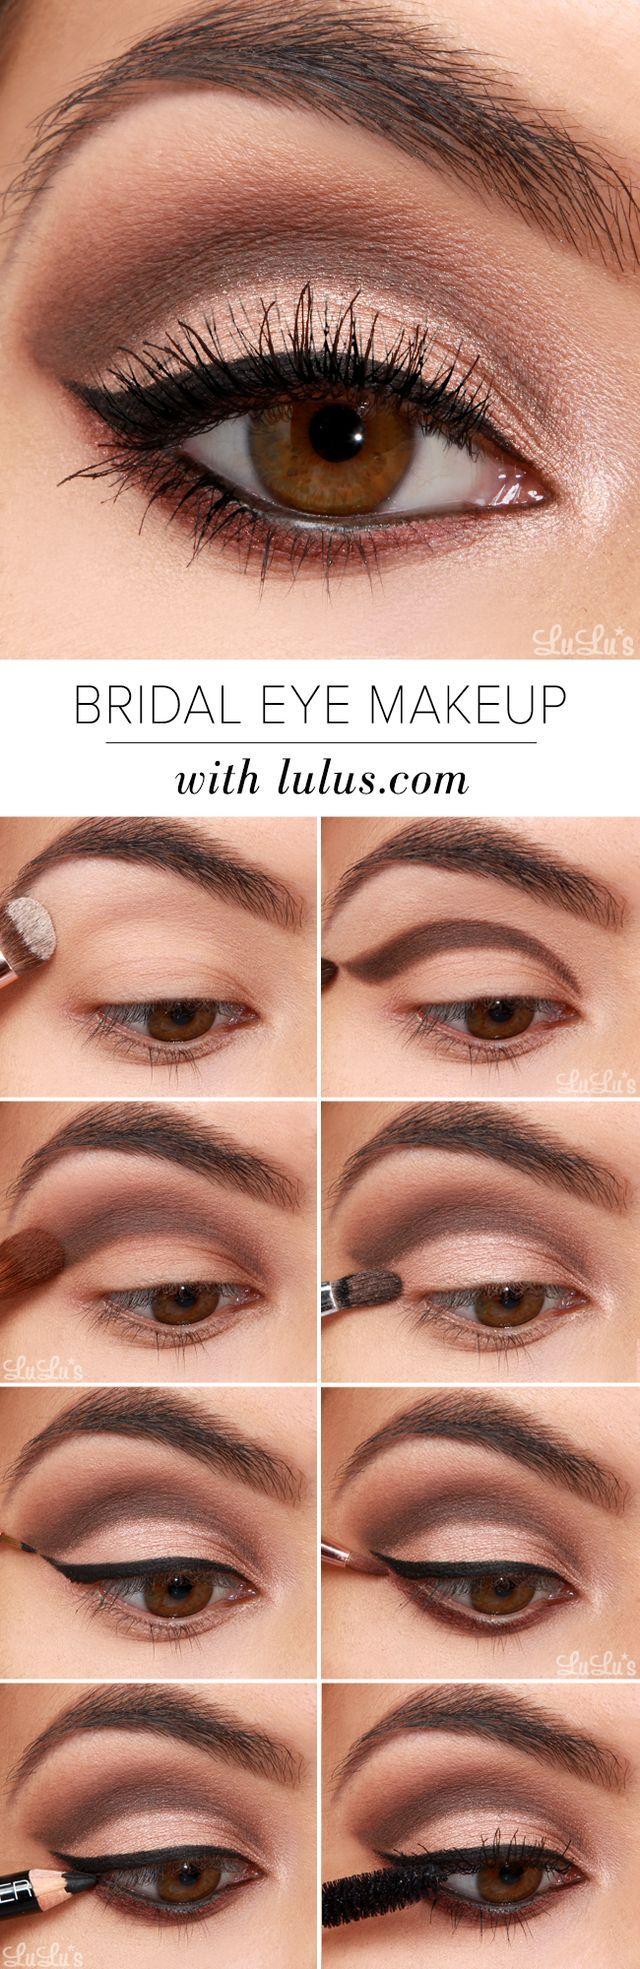 زفاف - LuLu*s How-To: Bridal Eye Makeup Tutorial (Lulus.com Fashion Blog)